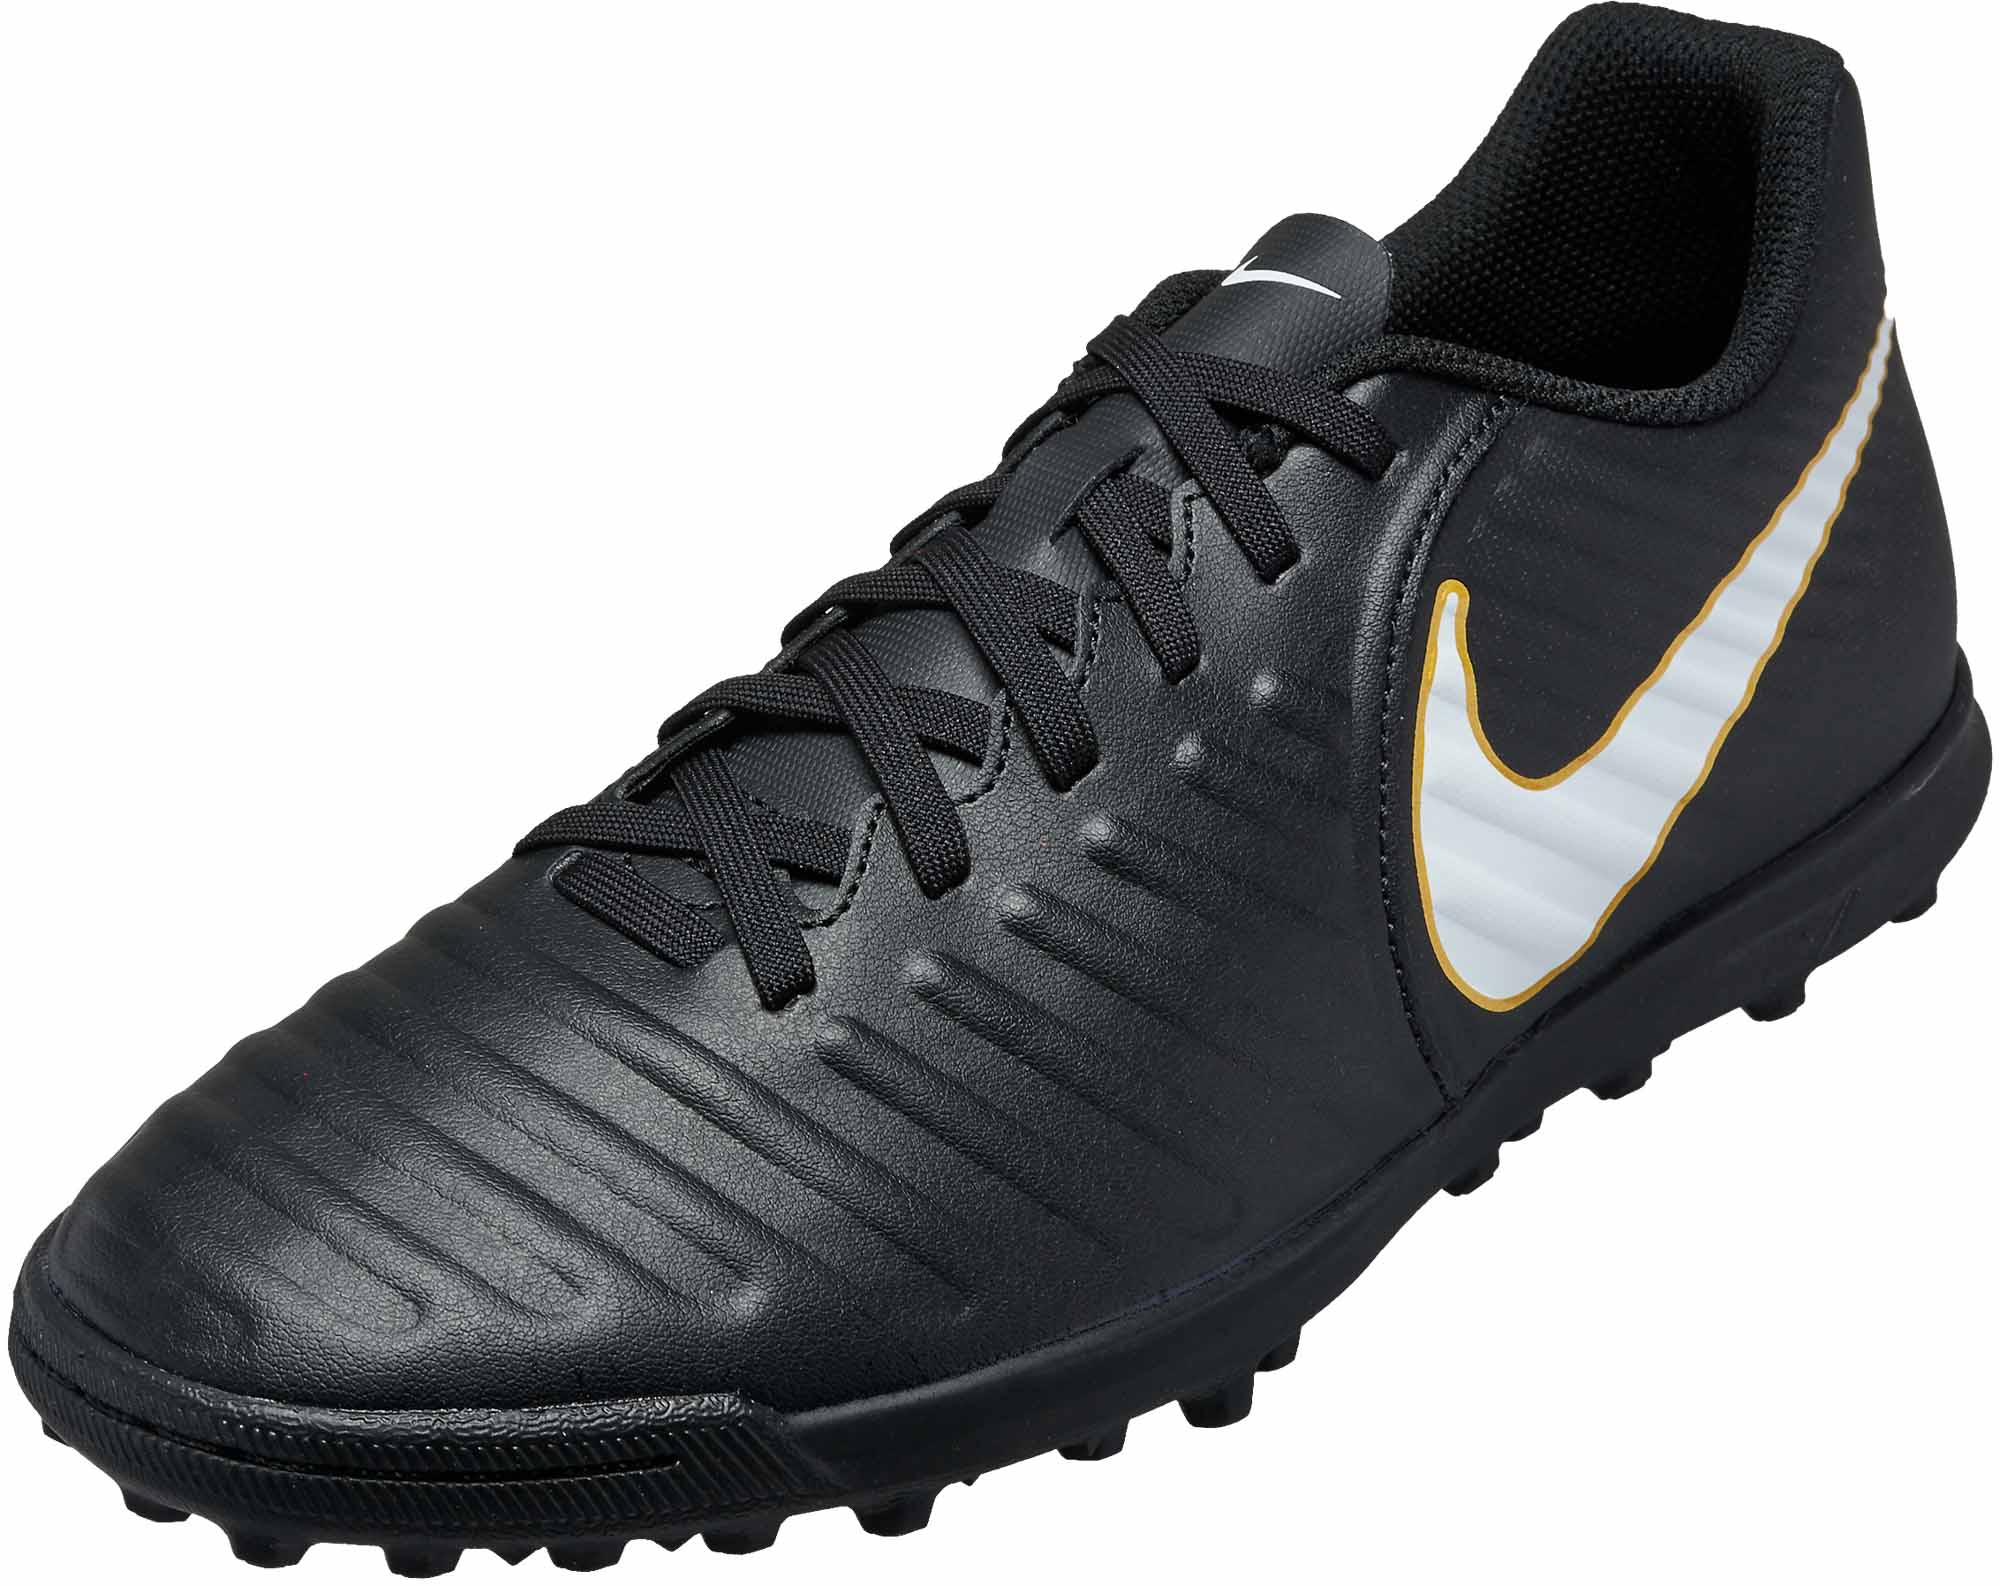 Nike TiempoX Rio IV Turf Soccer Shoes - Black